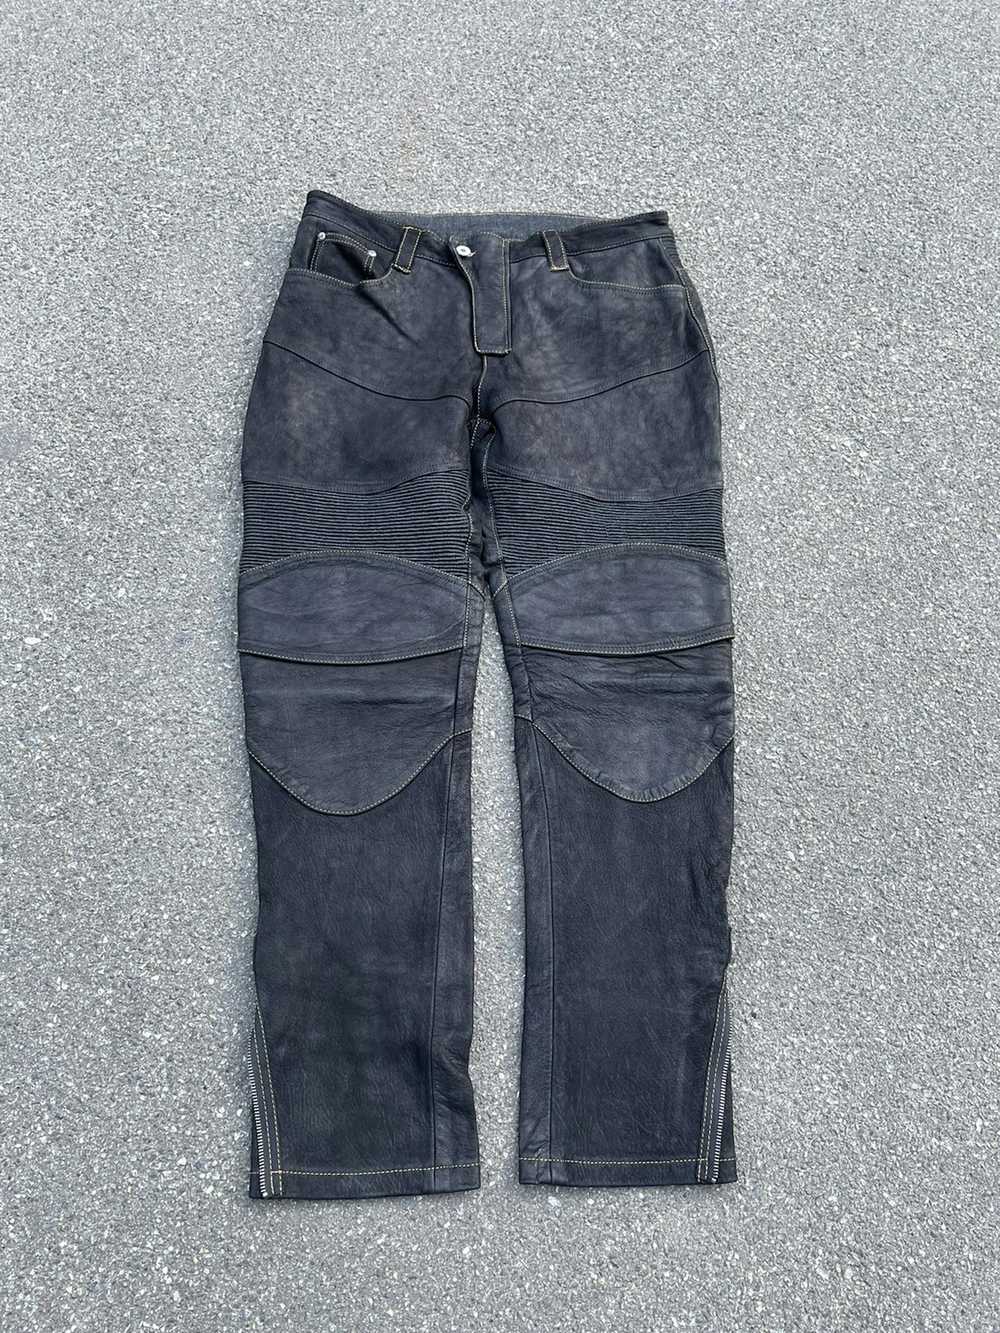 Biker Jeans × Genuine Leather × Vintage Vintage C… - image 2